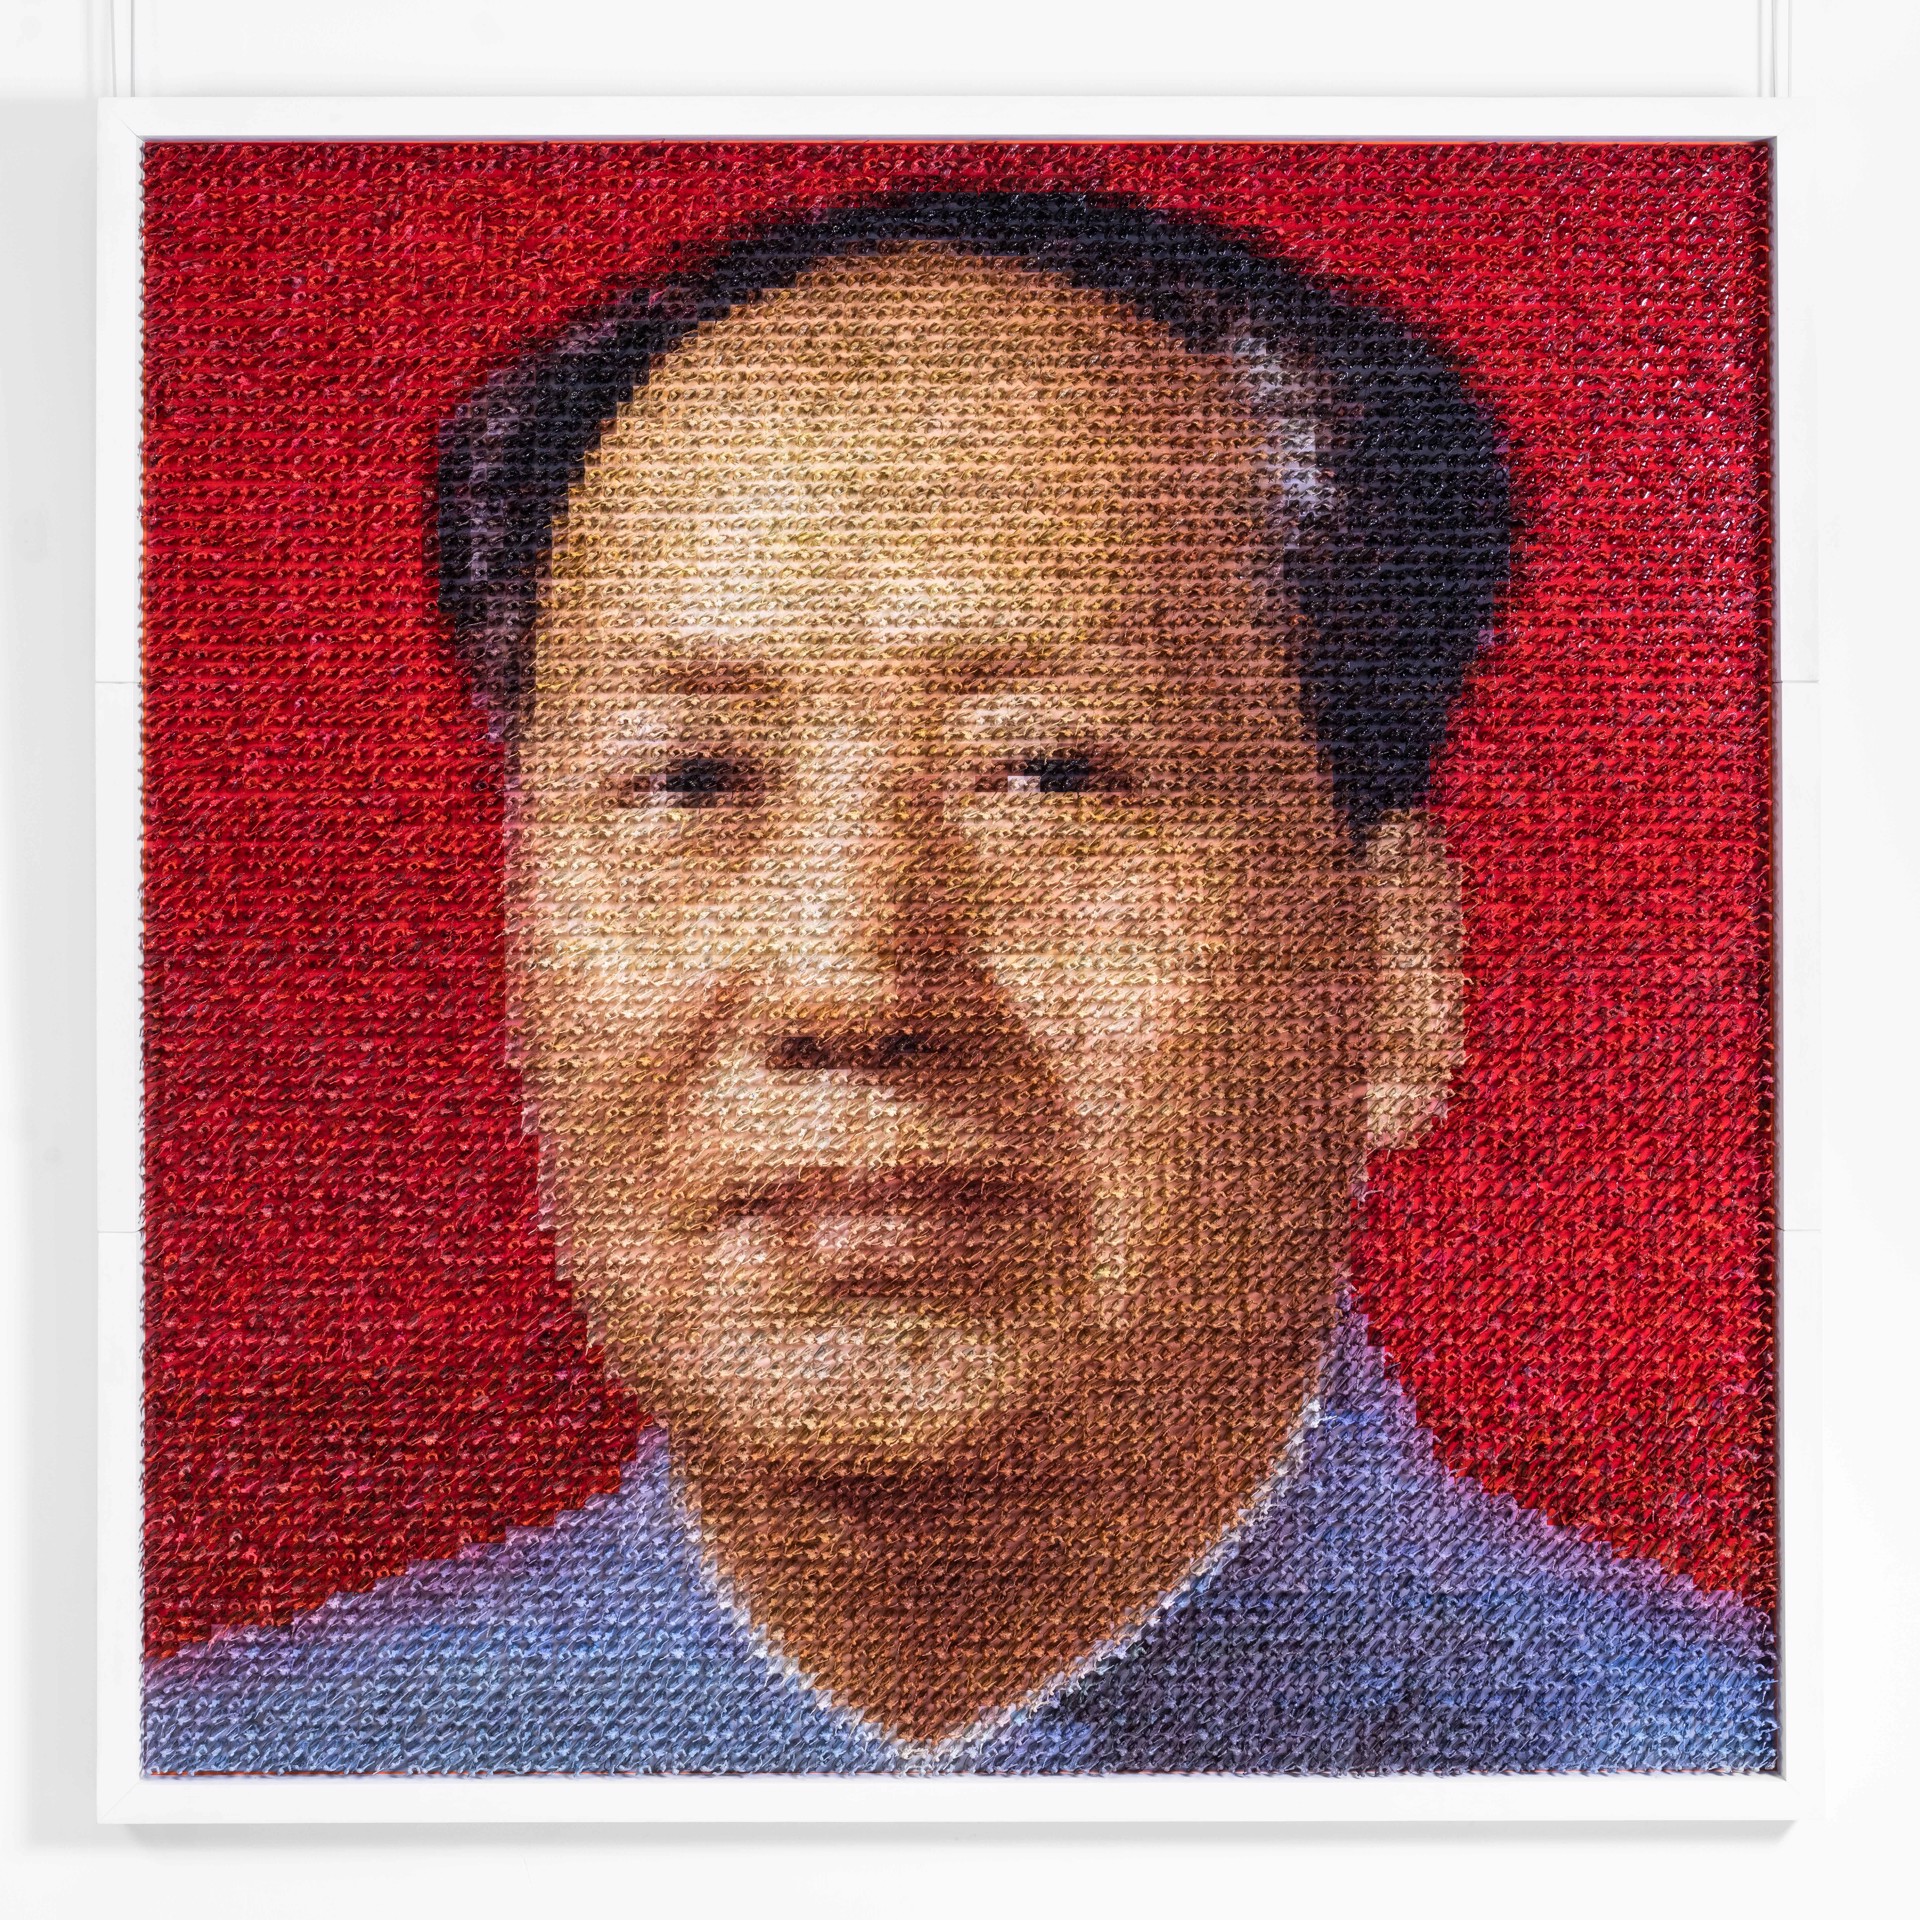 Mao by Martin Mancera